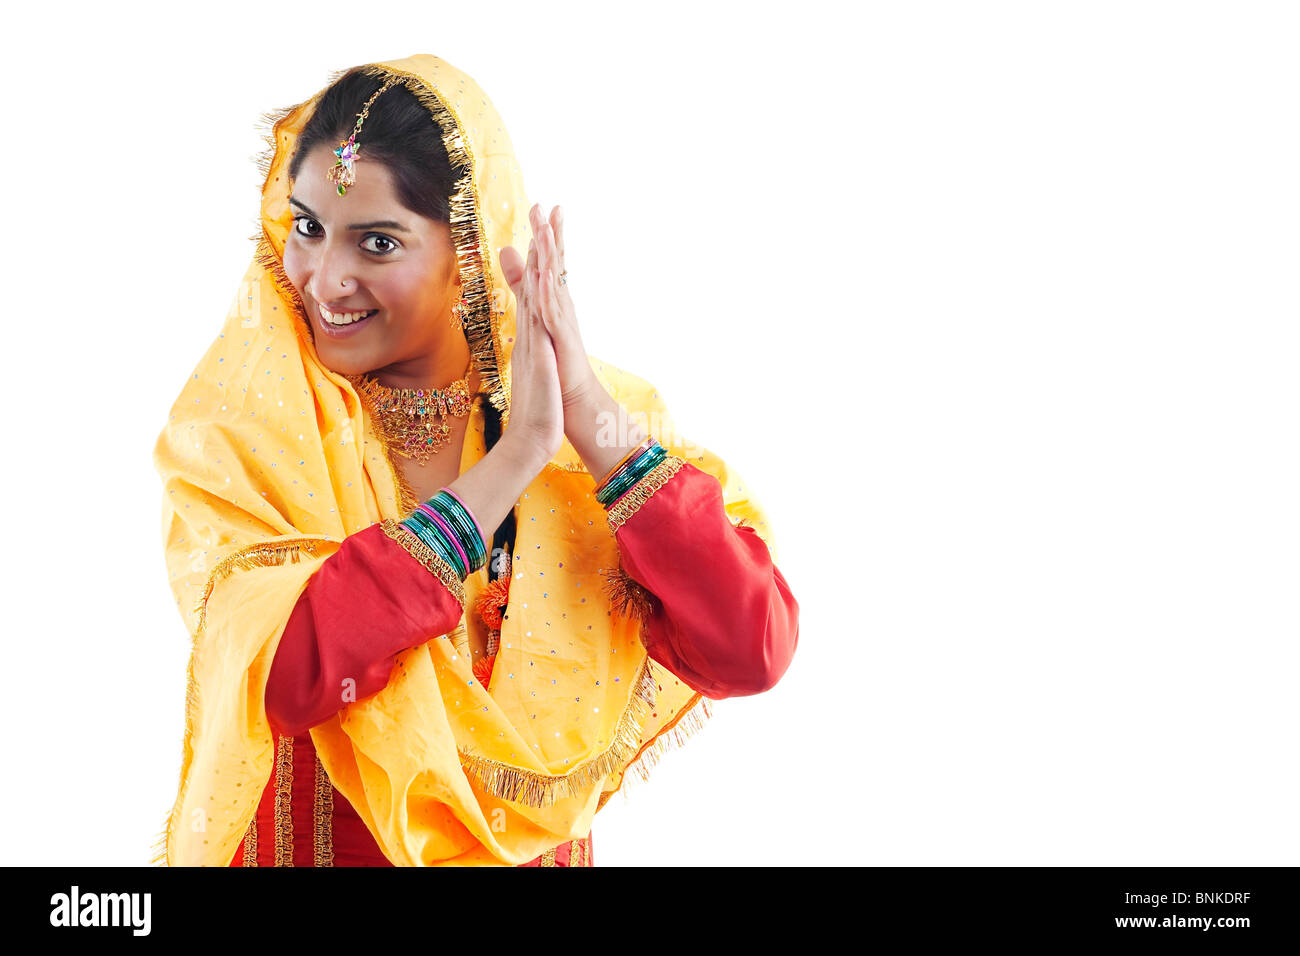 La religione sikh woman dancing Foto Stock